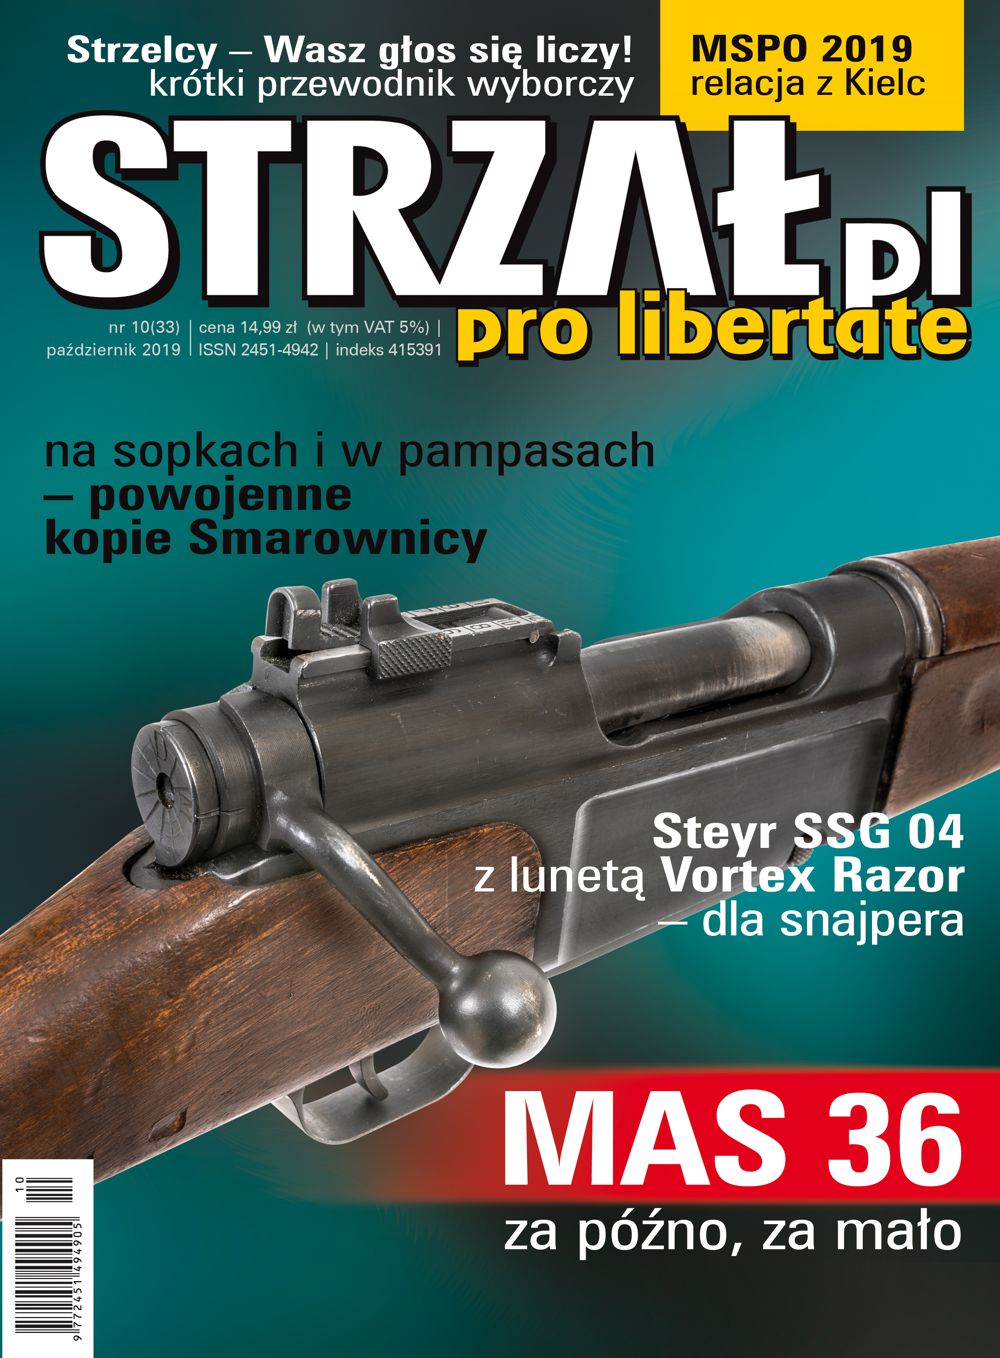 33.STRZAL.pl pazdziernik 2019